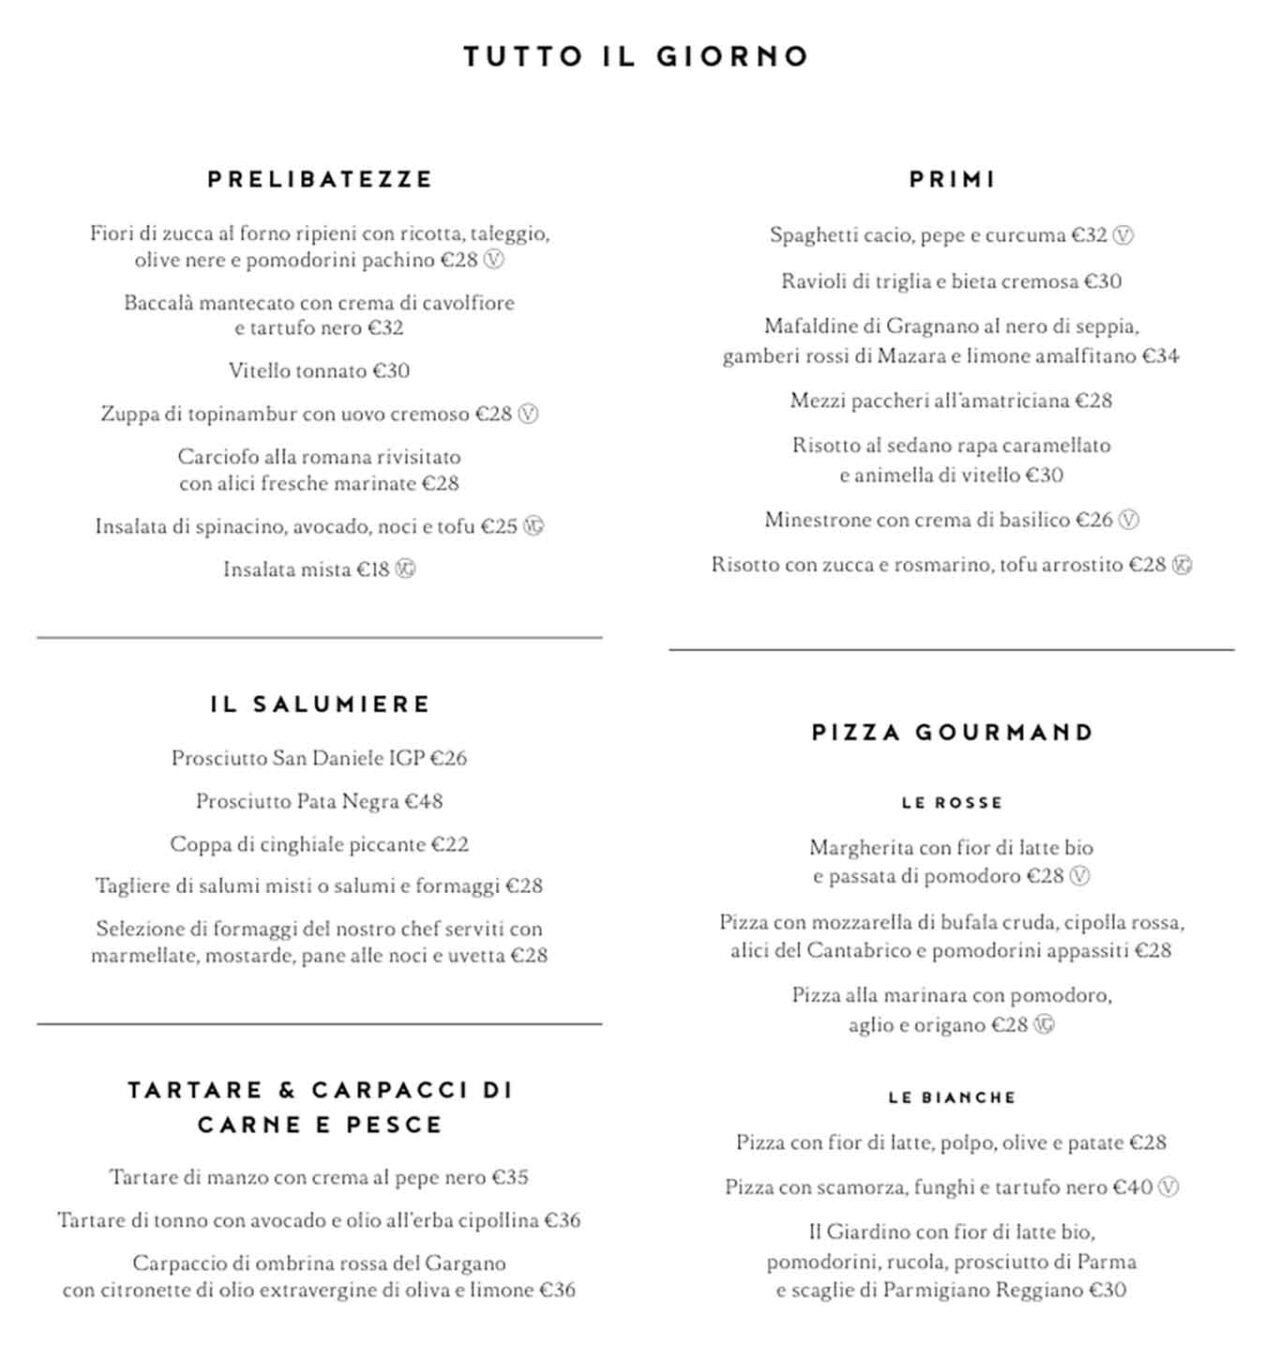 menu e prezzi del ristorante Il Giardino dell'Hotel Eden a Roma